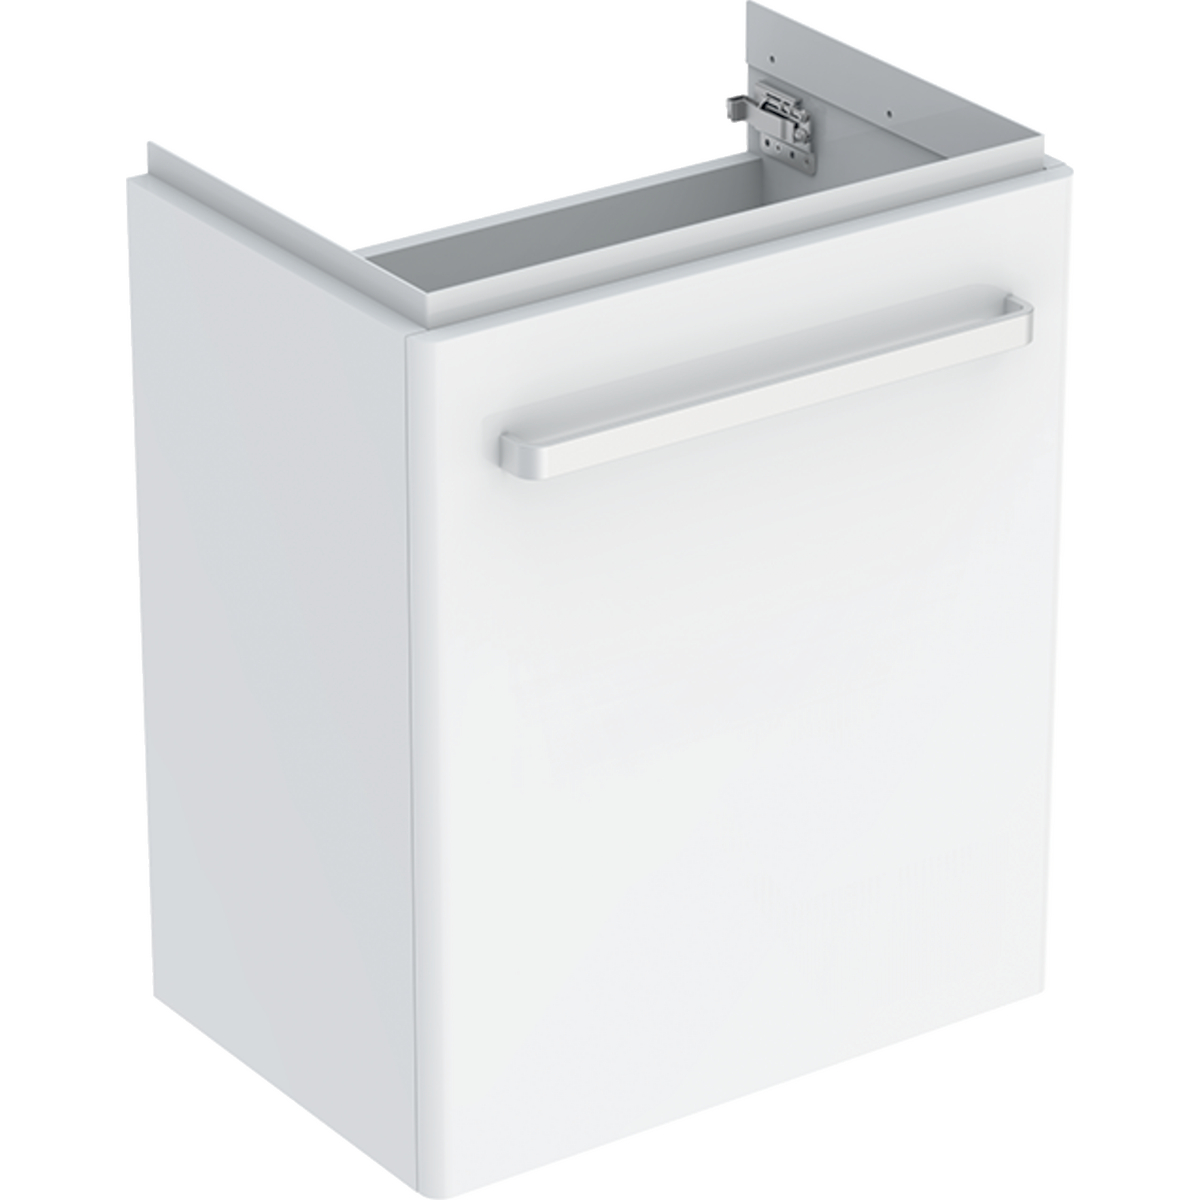 Selnova Compact Unit For washbasin 550mm - White